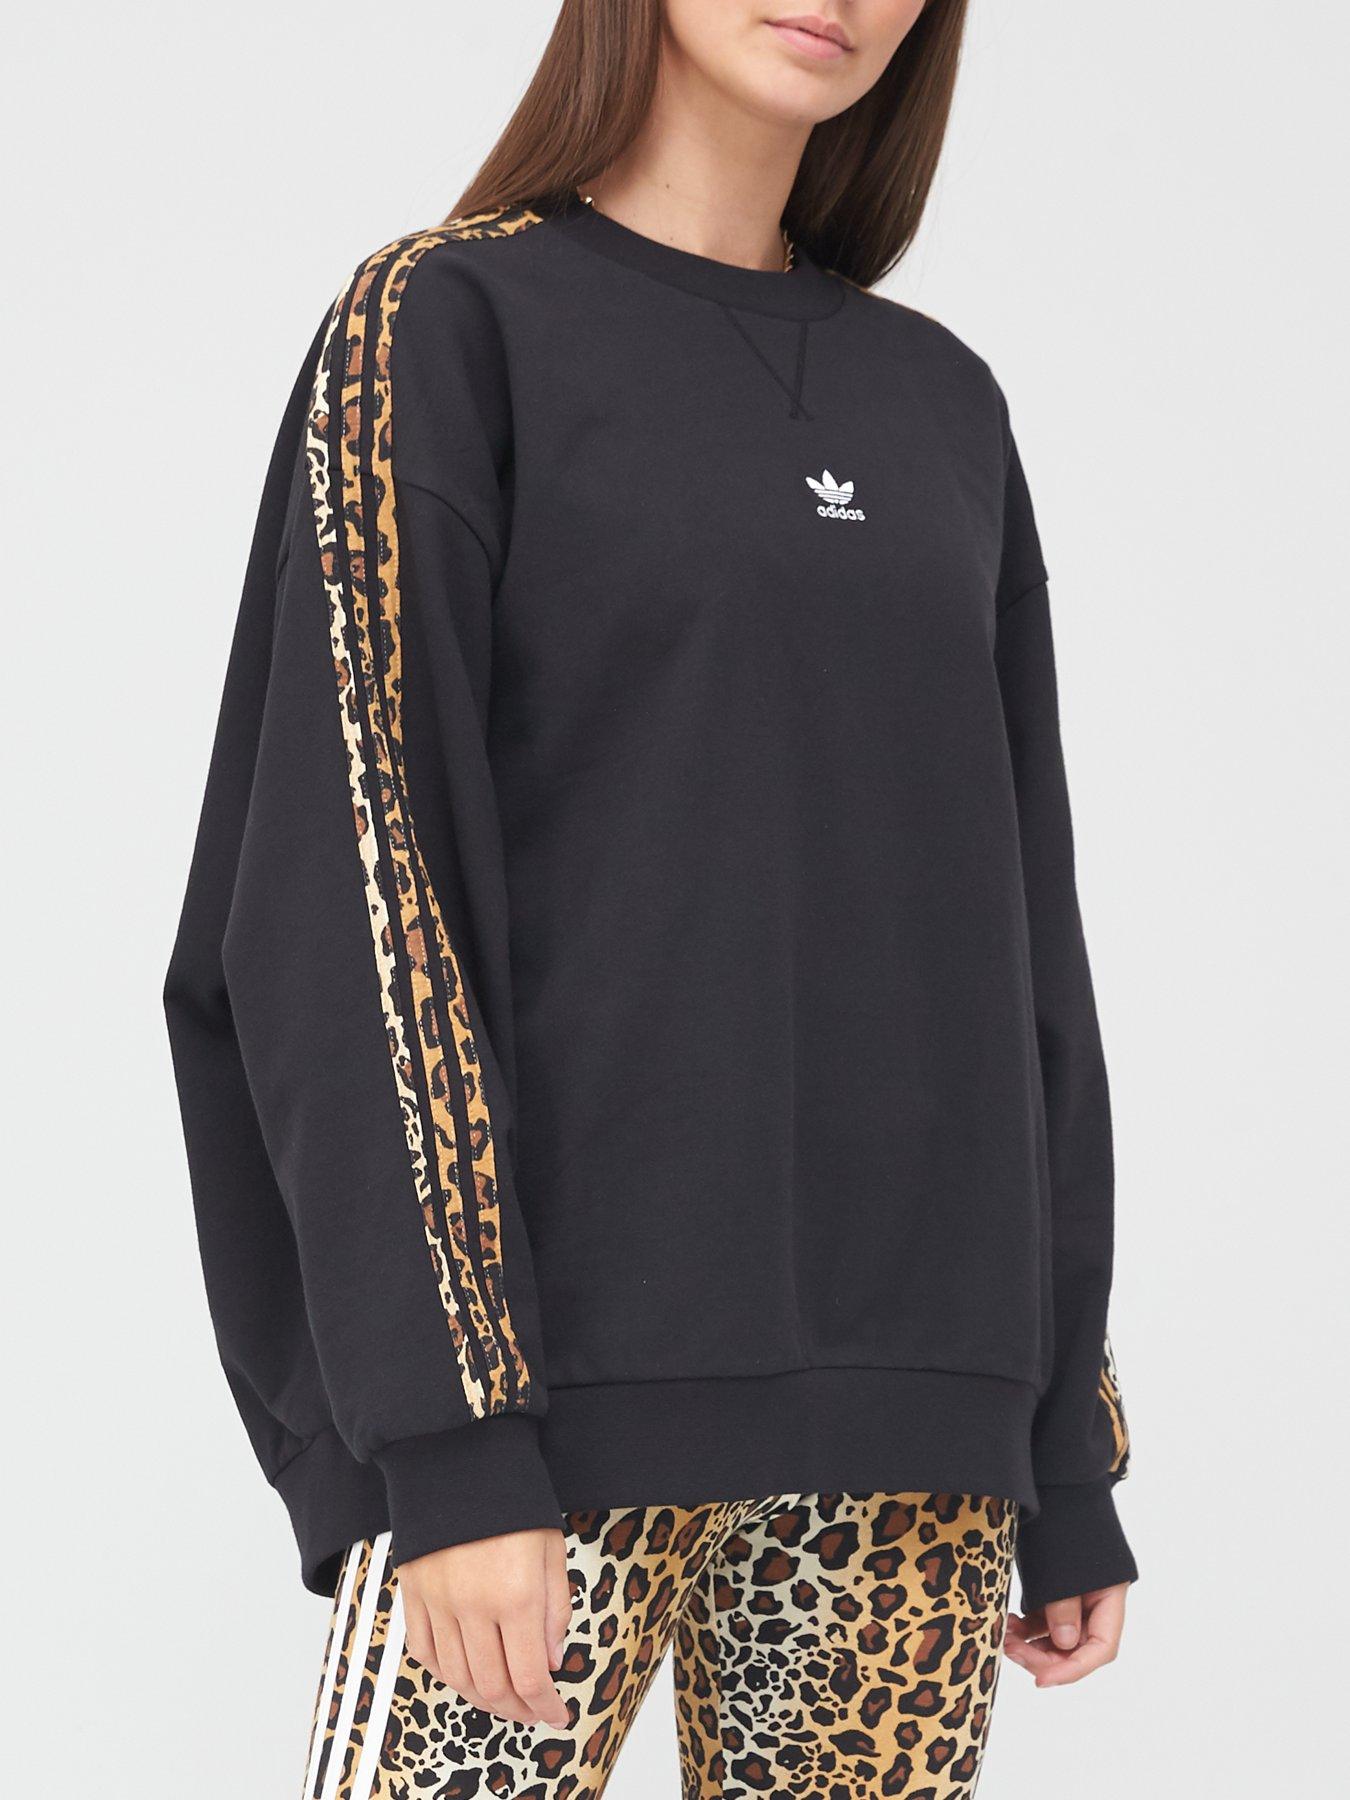 adidas Originals Leopard Lux Sweatshirt - Black , Black, Size 14, Women